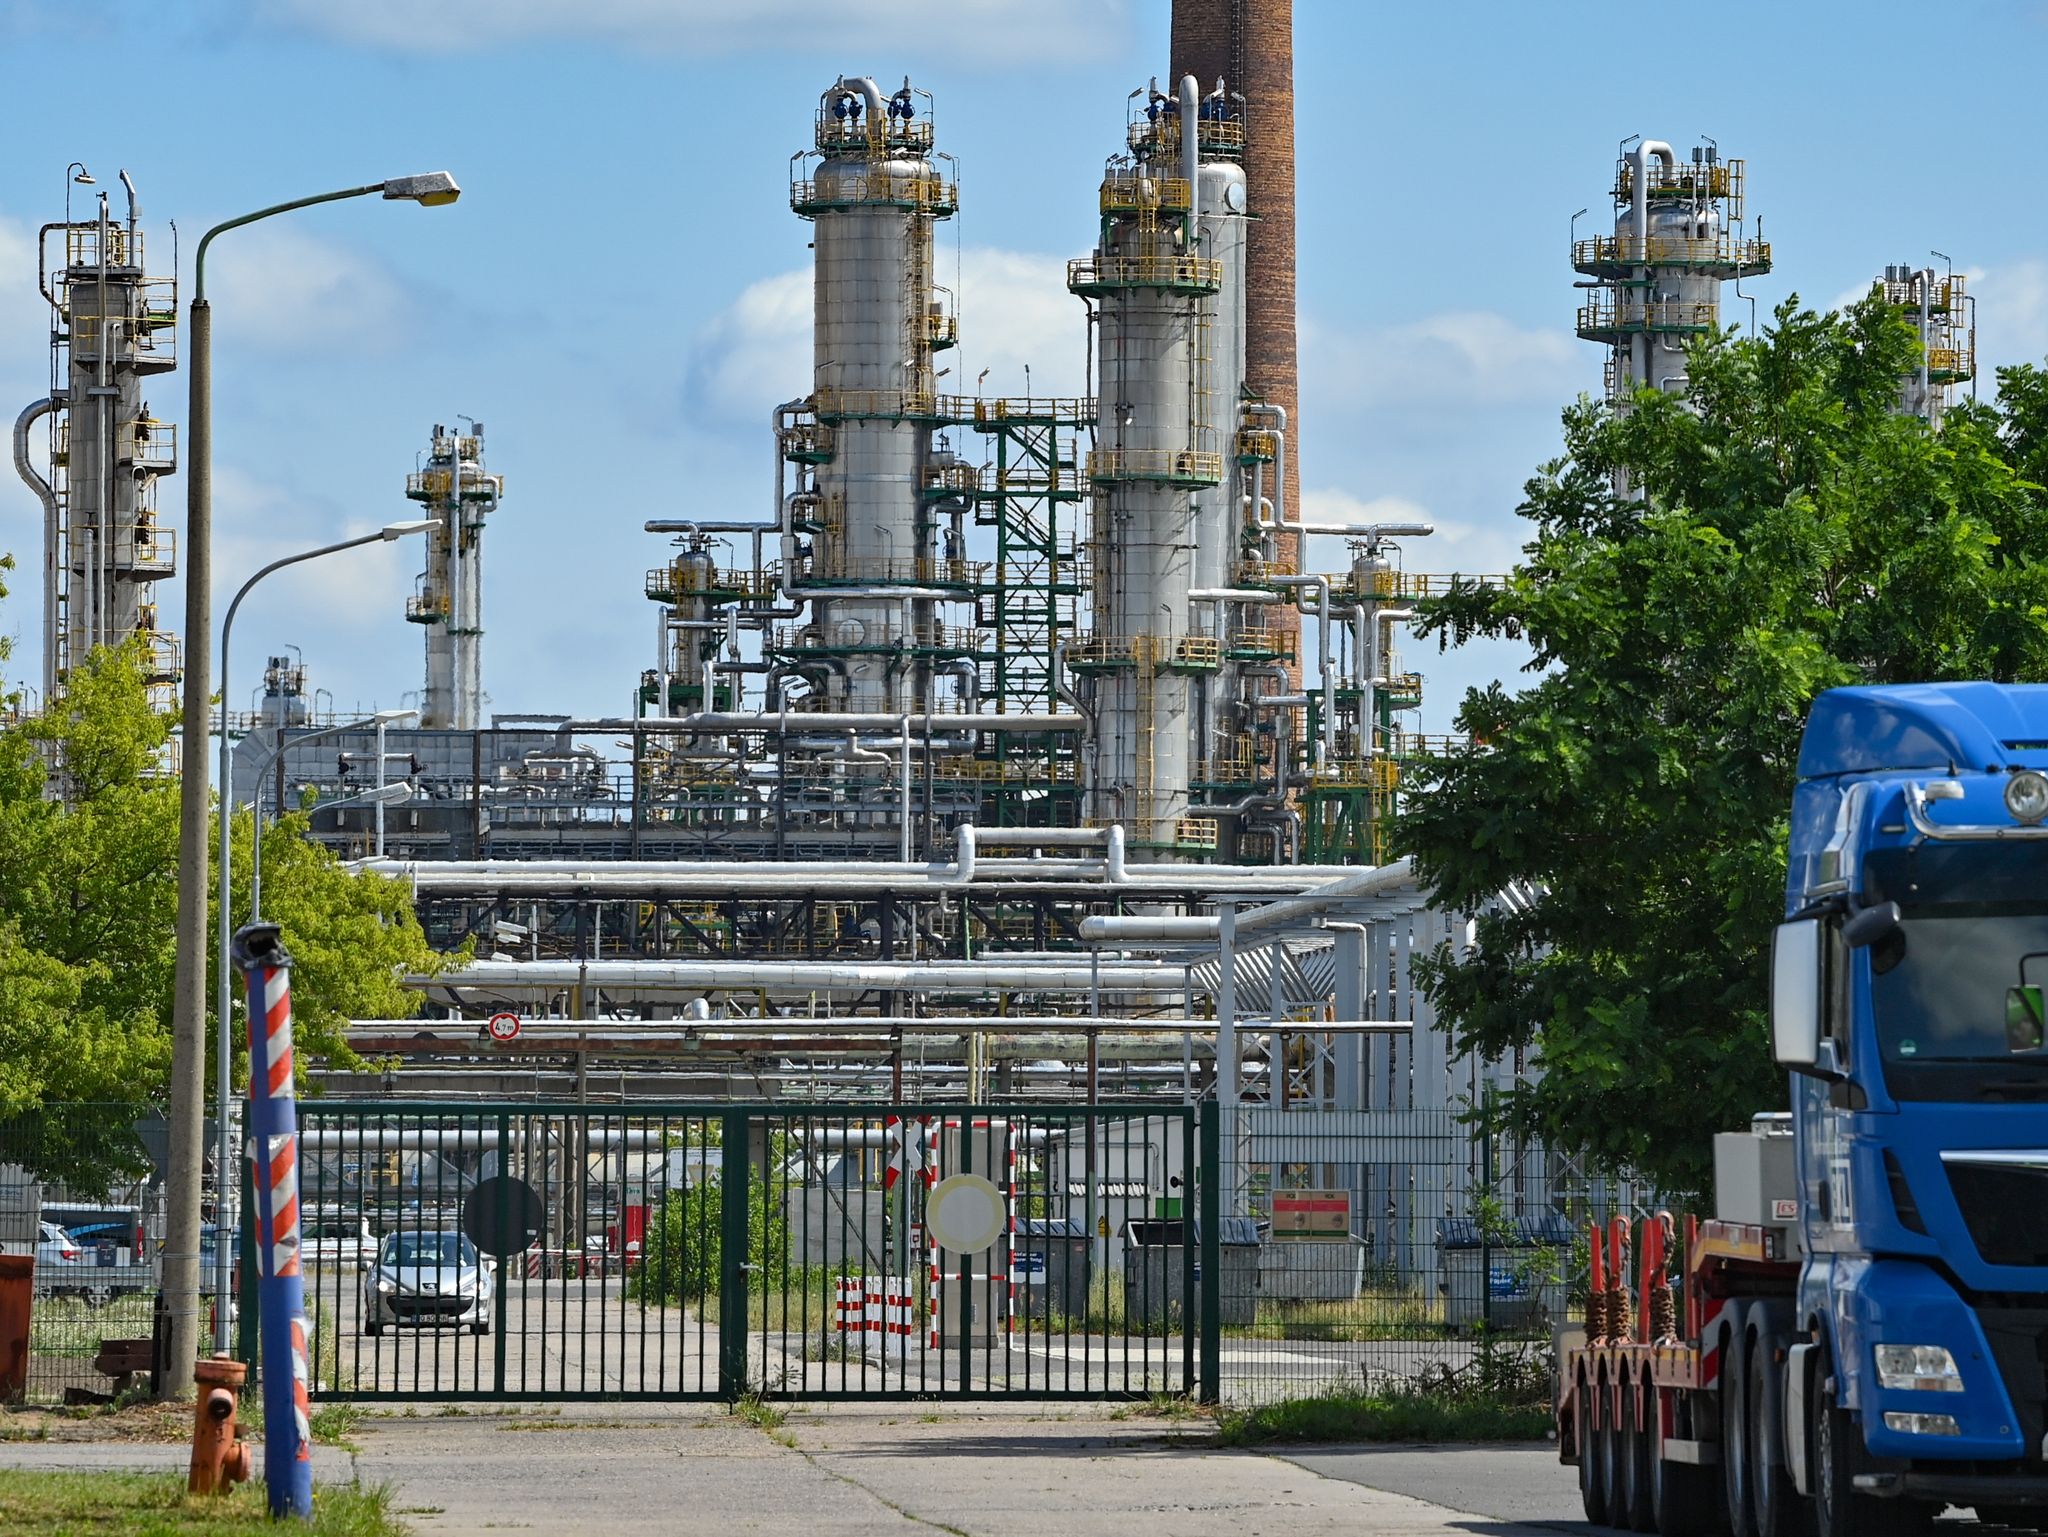 Anlagen zur Rohölverarbeitung stehen auf dem Gelände der PCK-Raffinerie GmbH.